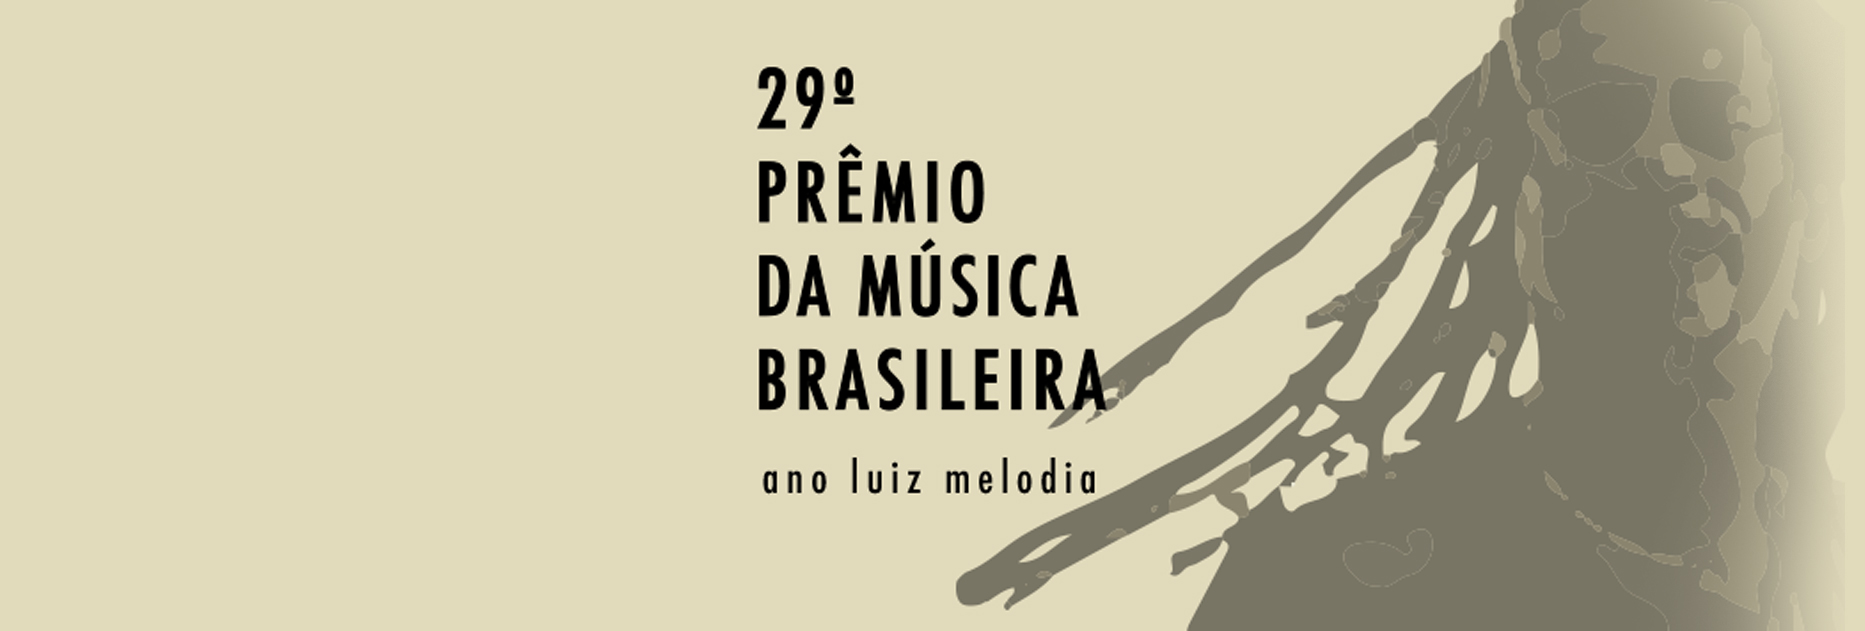 Premio da Música Brasileira revive Luiz Melodia em sua 29º edição